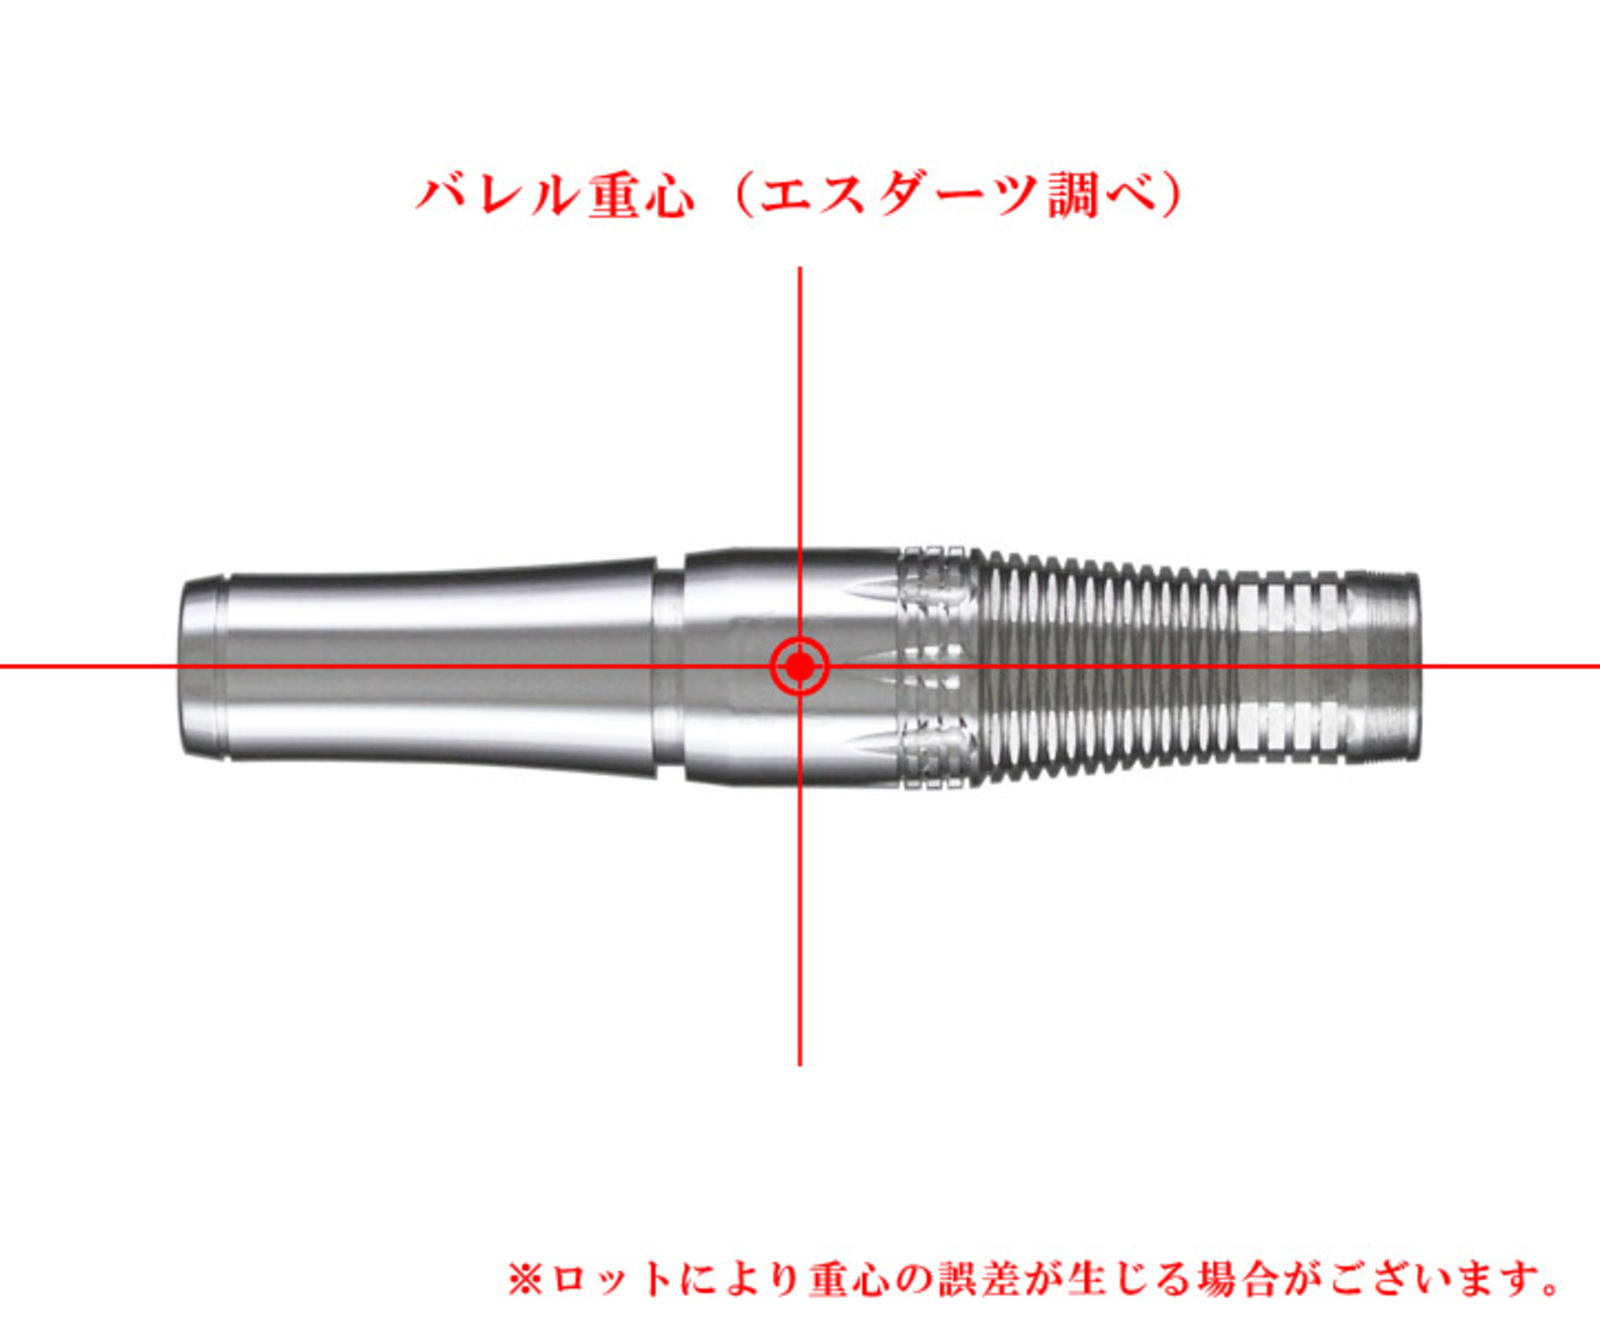 Darts & Tungsten 95% | Darts Online Shop S-DARTS from JAPAN.